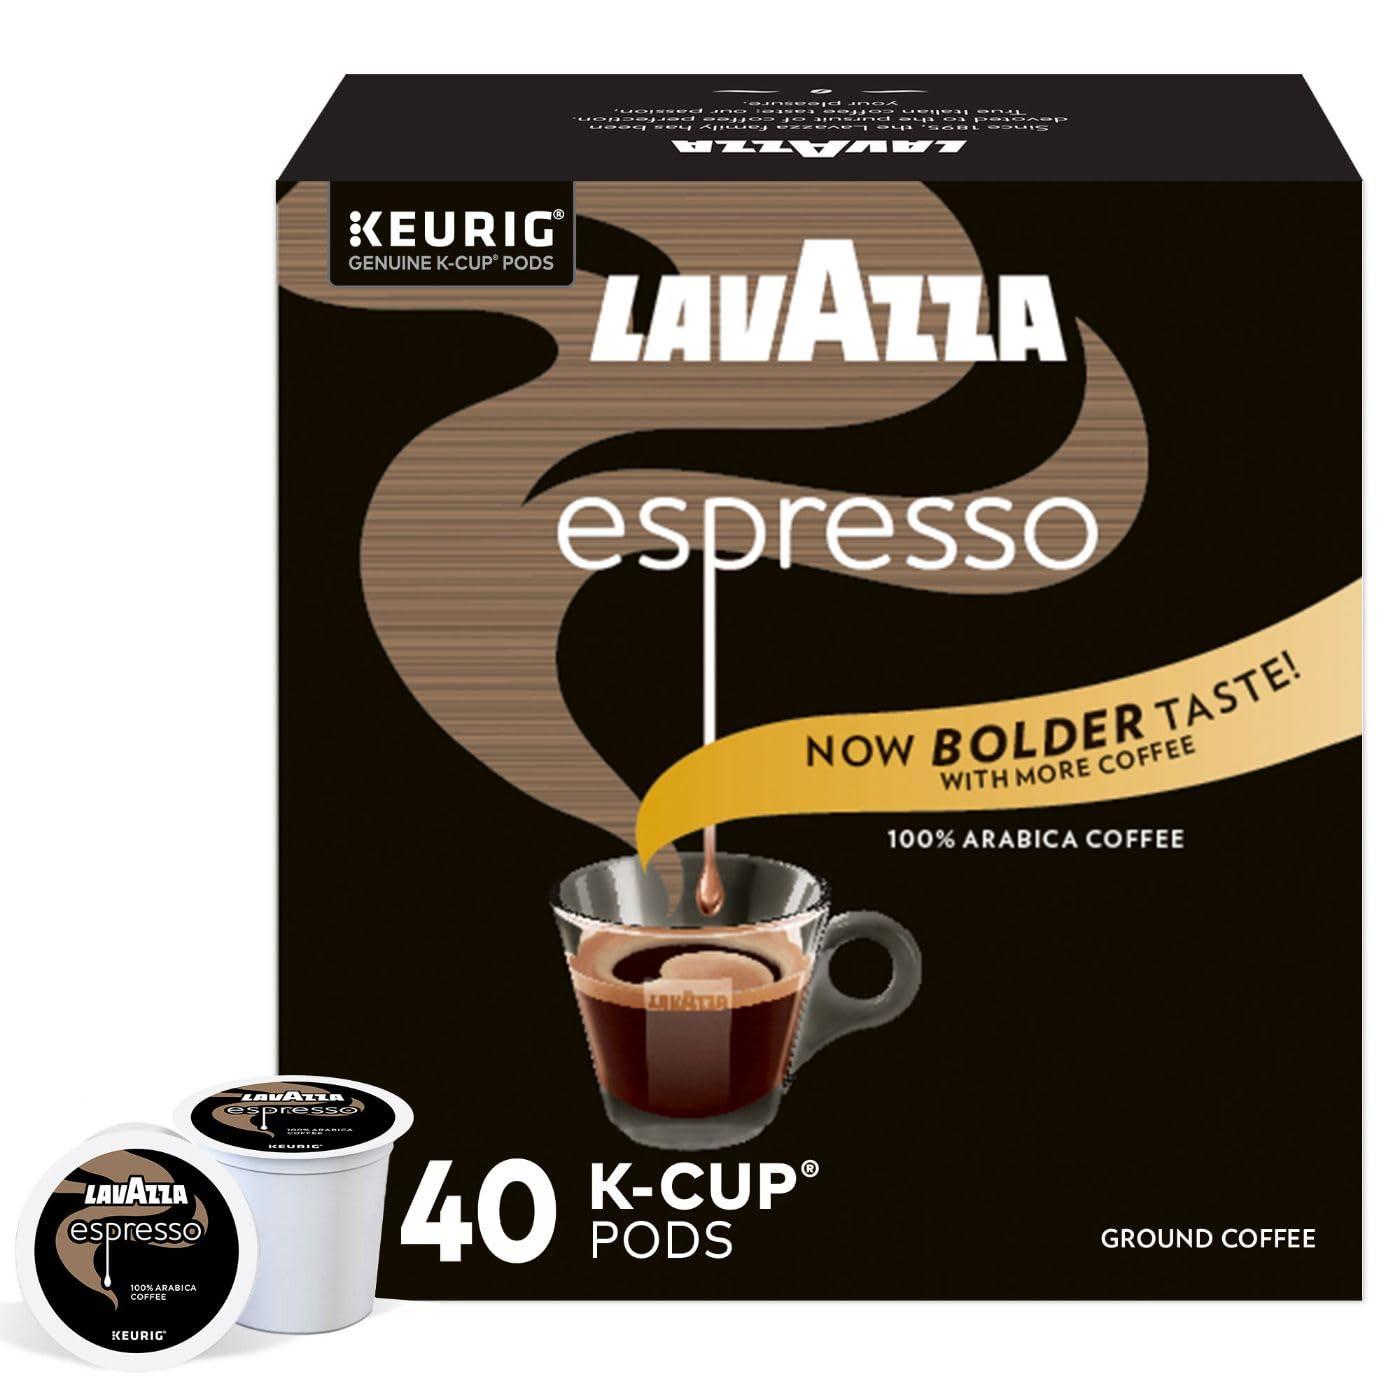 Lavazza Espresso Italiano K-Cup Coffee Pods 40 Pack for $14.99